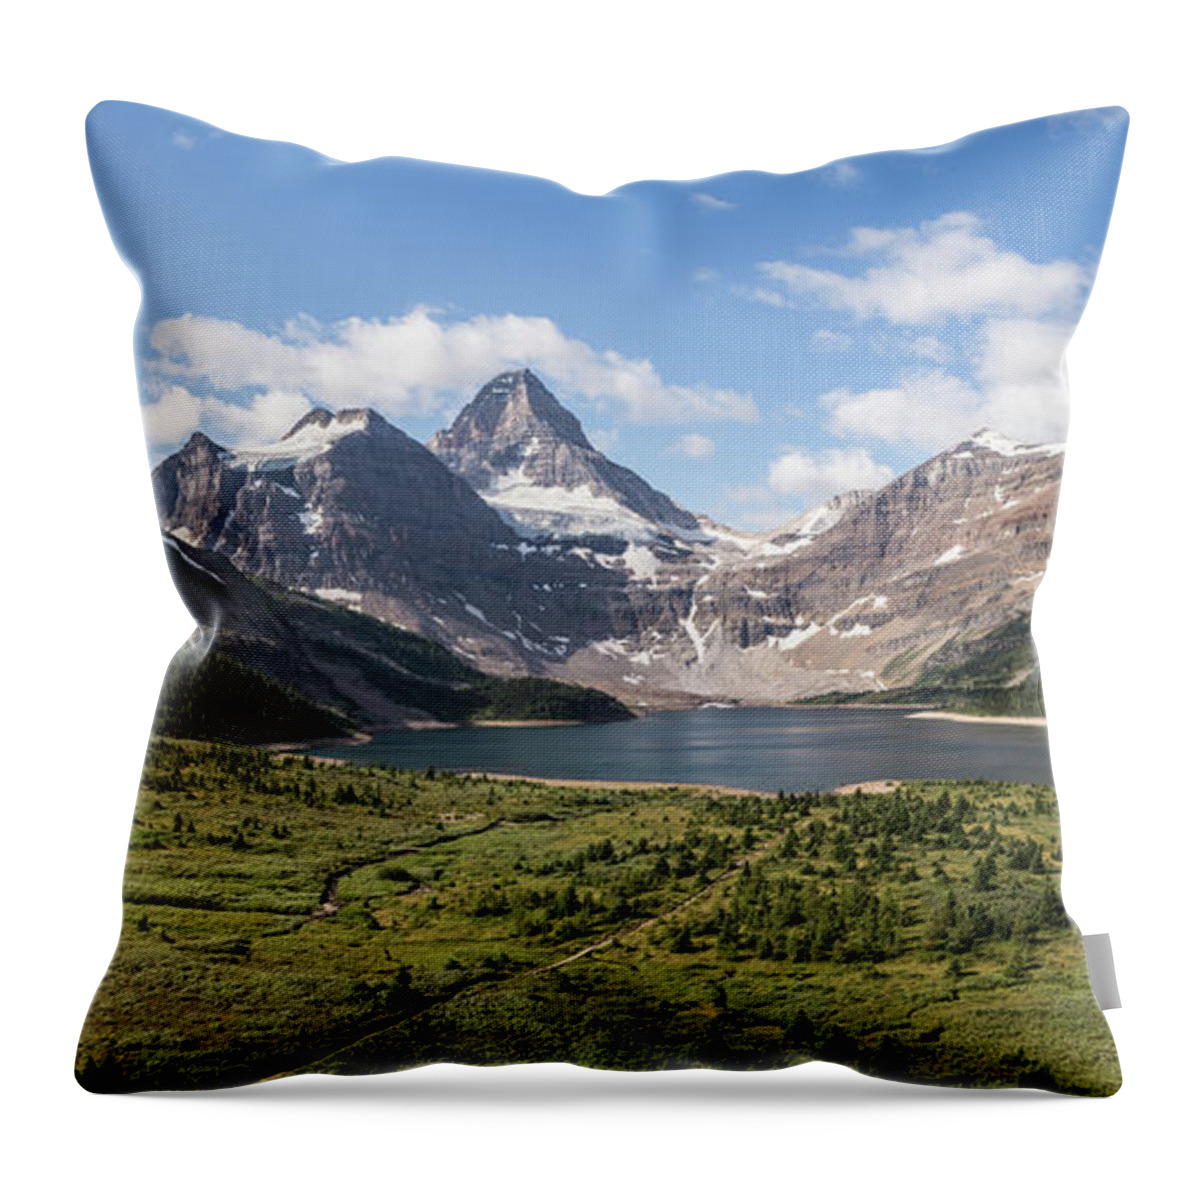 Mt. Assiniboine Throw Pillow featuring the photograph Assiniboine Valley by Joe Kopp